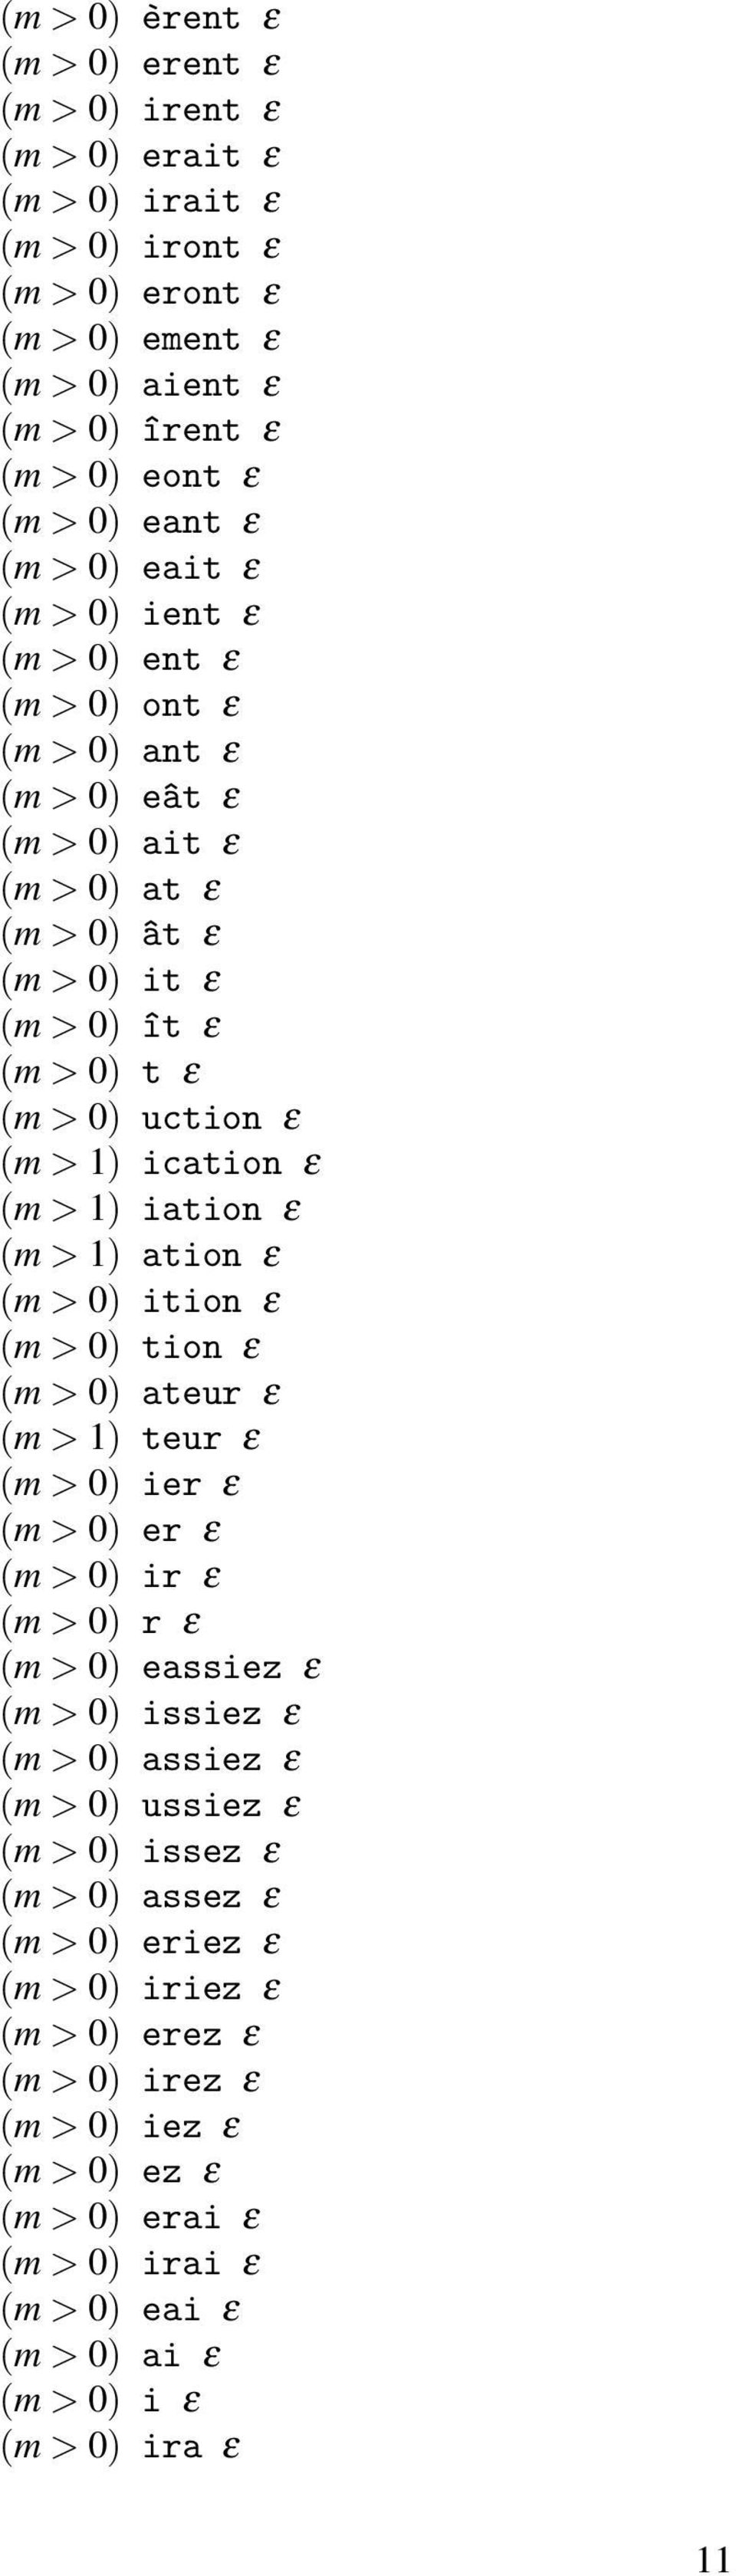 iation ε (m > 1) ation ε (m > 0) ition ε (m > 0) tion ε (m > 0) ateur ε (m > 1) teur ε (m > 0) ier ε (m > 0) er ε (m > 0) ir ε (m > 0) r ε (m > 0) eassiez ε (m > 0) issiez ε (m > 0) assiez ε (m > 0)